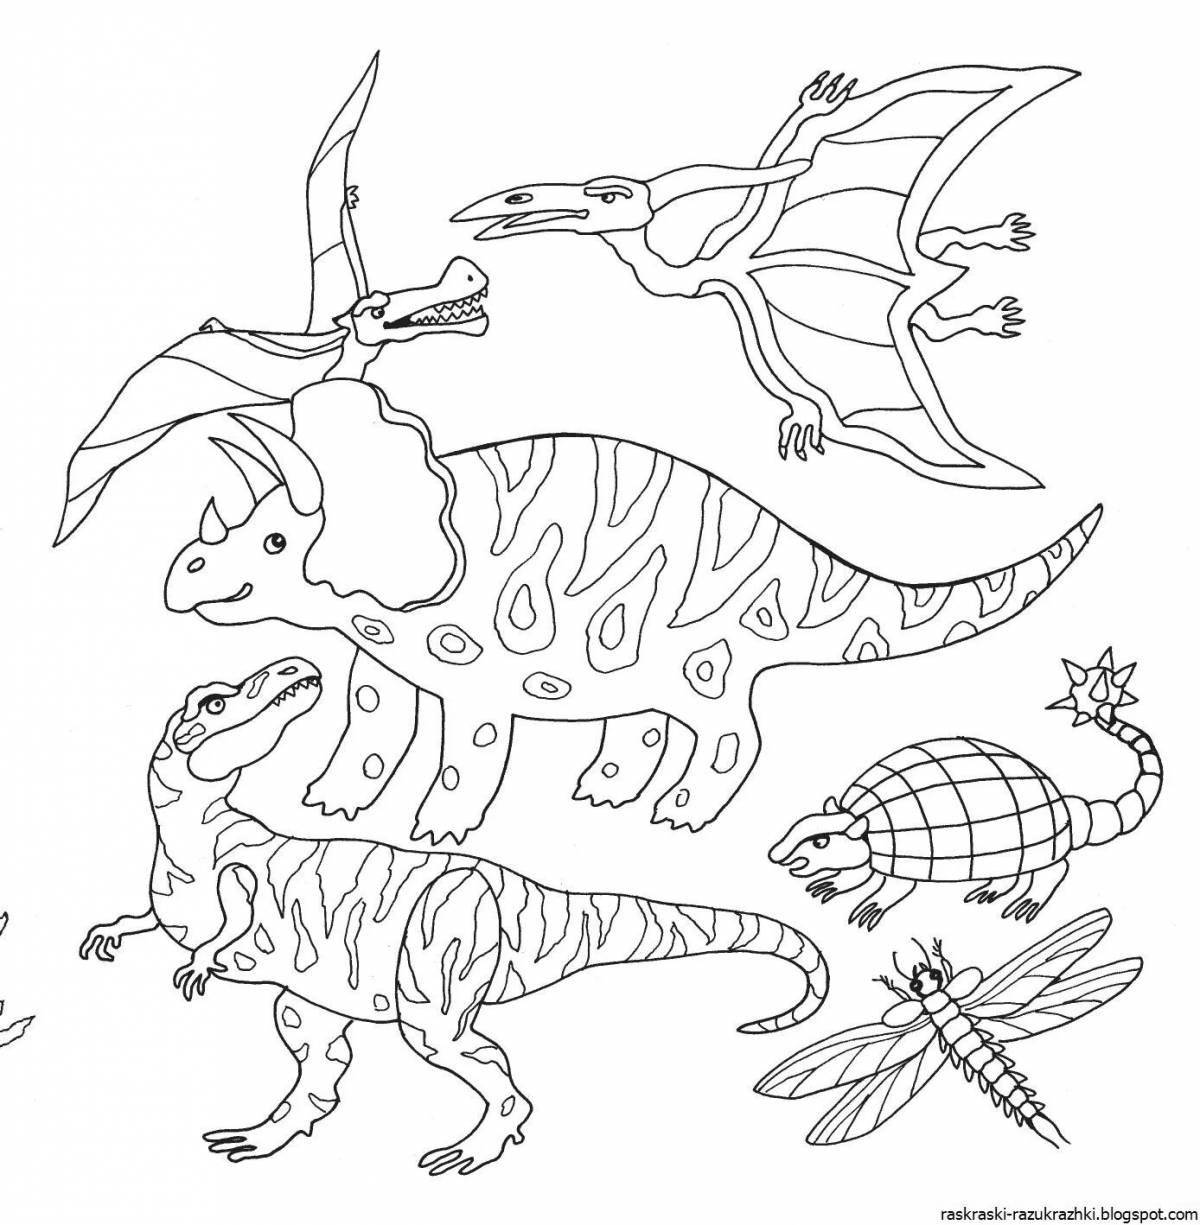 Развлекательная раскраска динозавров для детей 5-8 лет